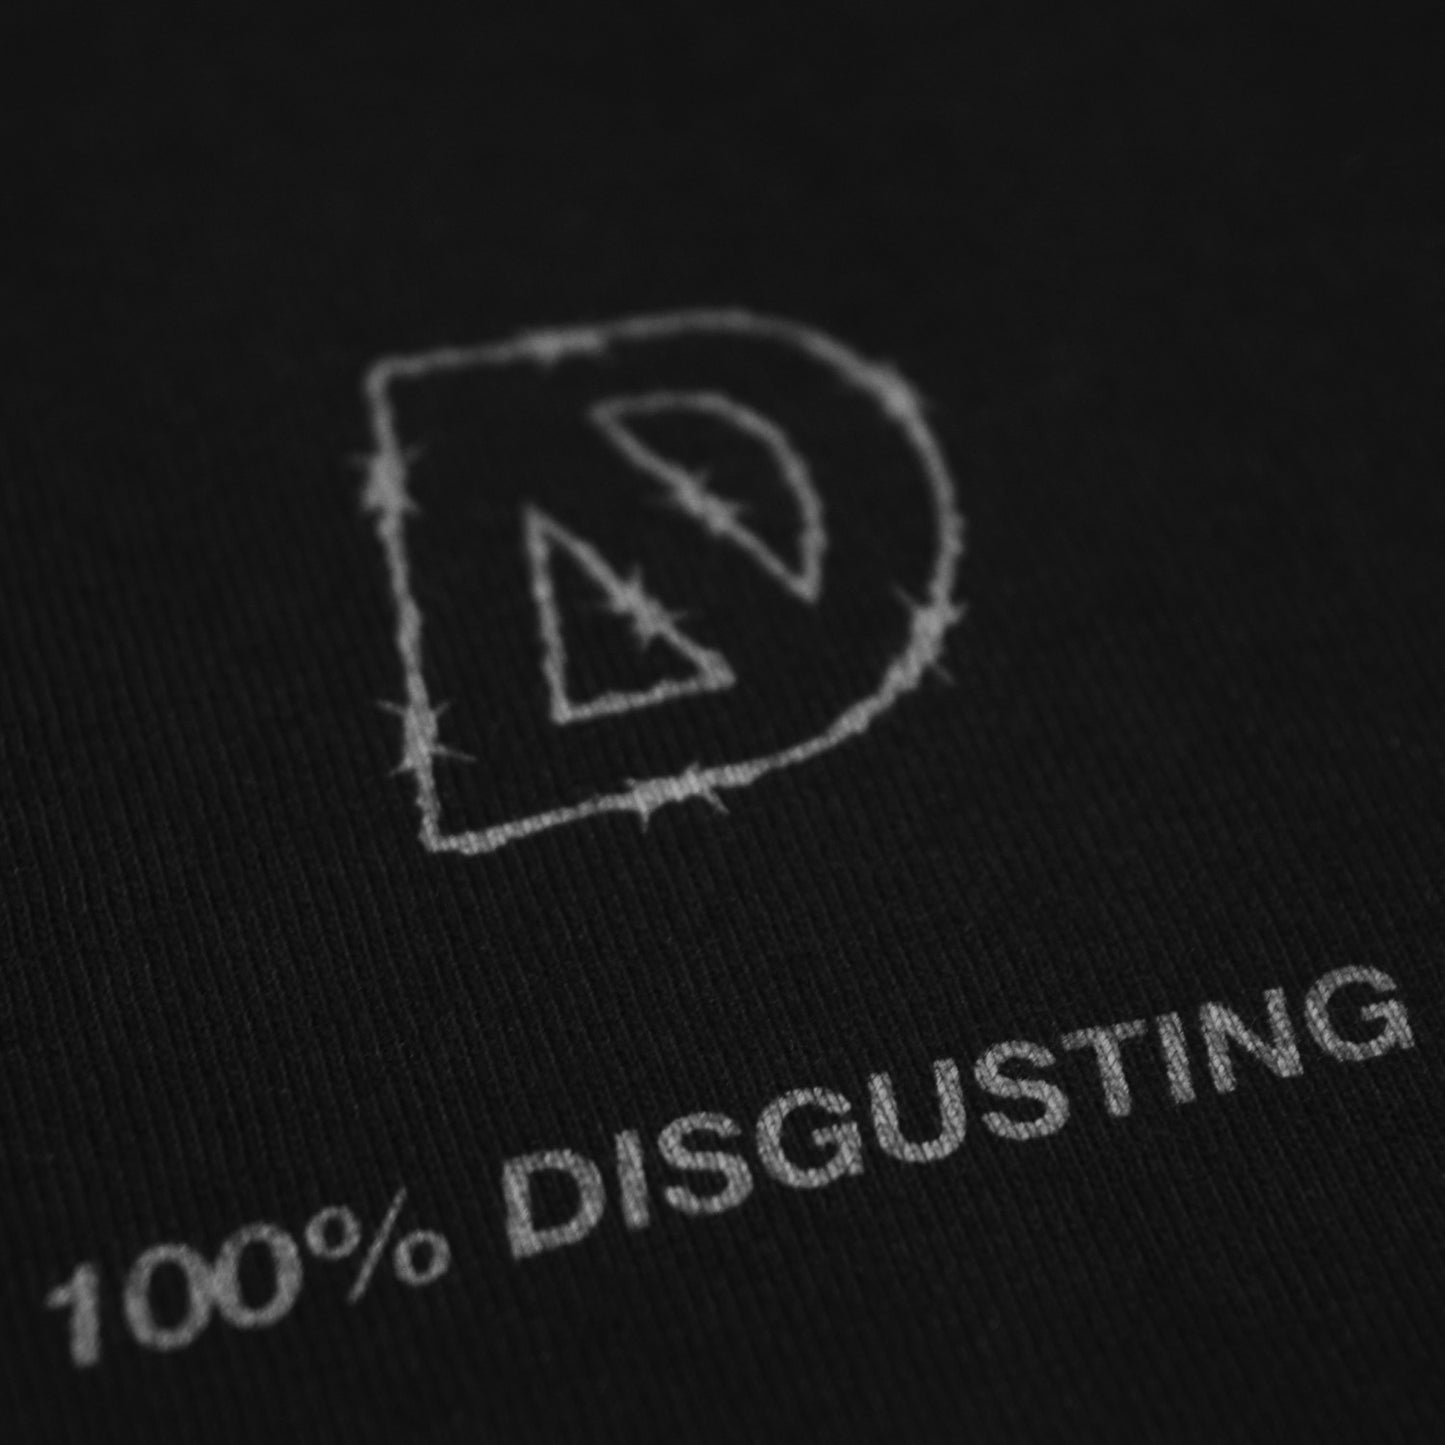 100% Disgusting